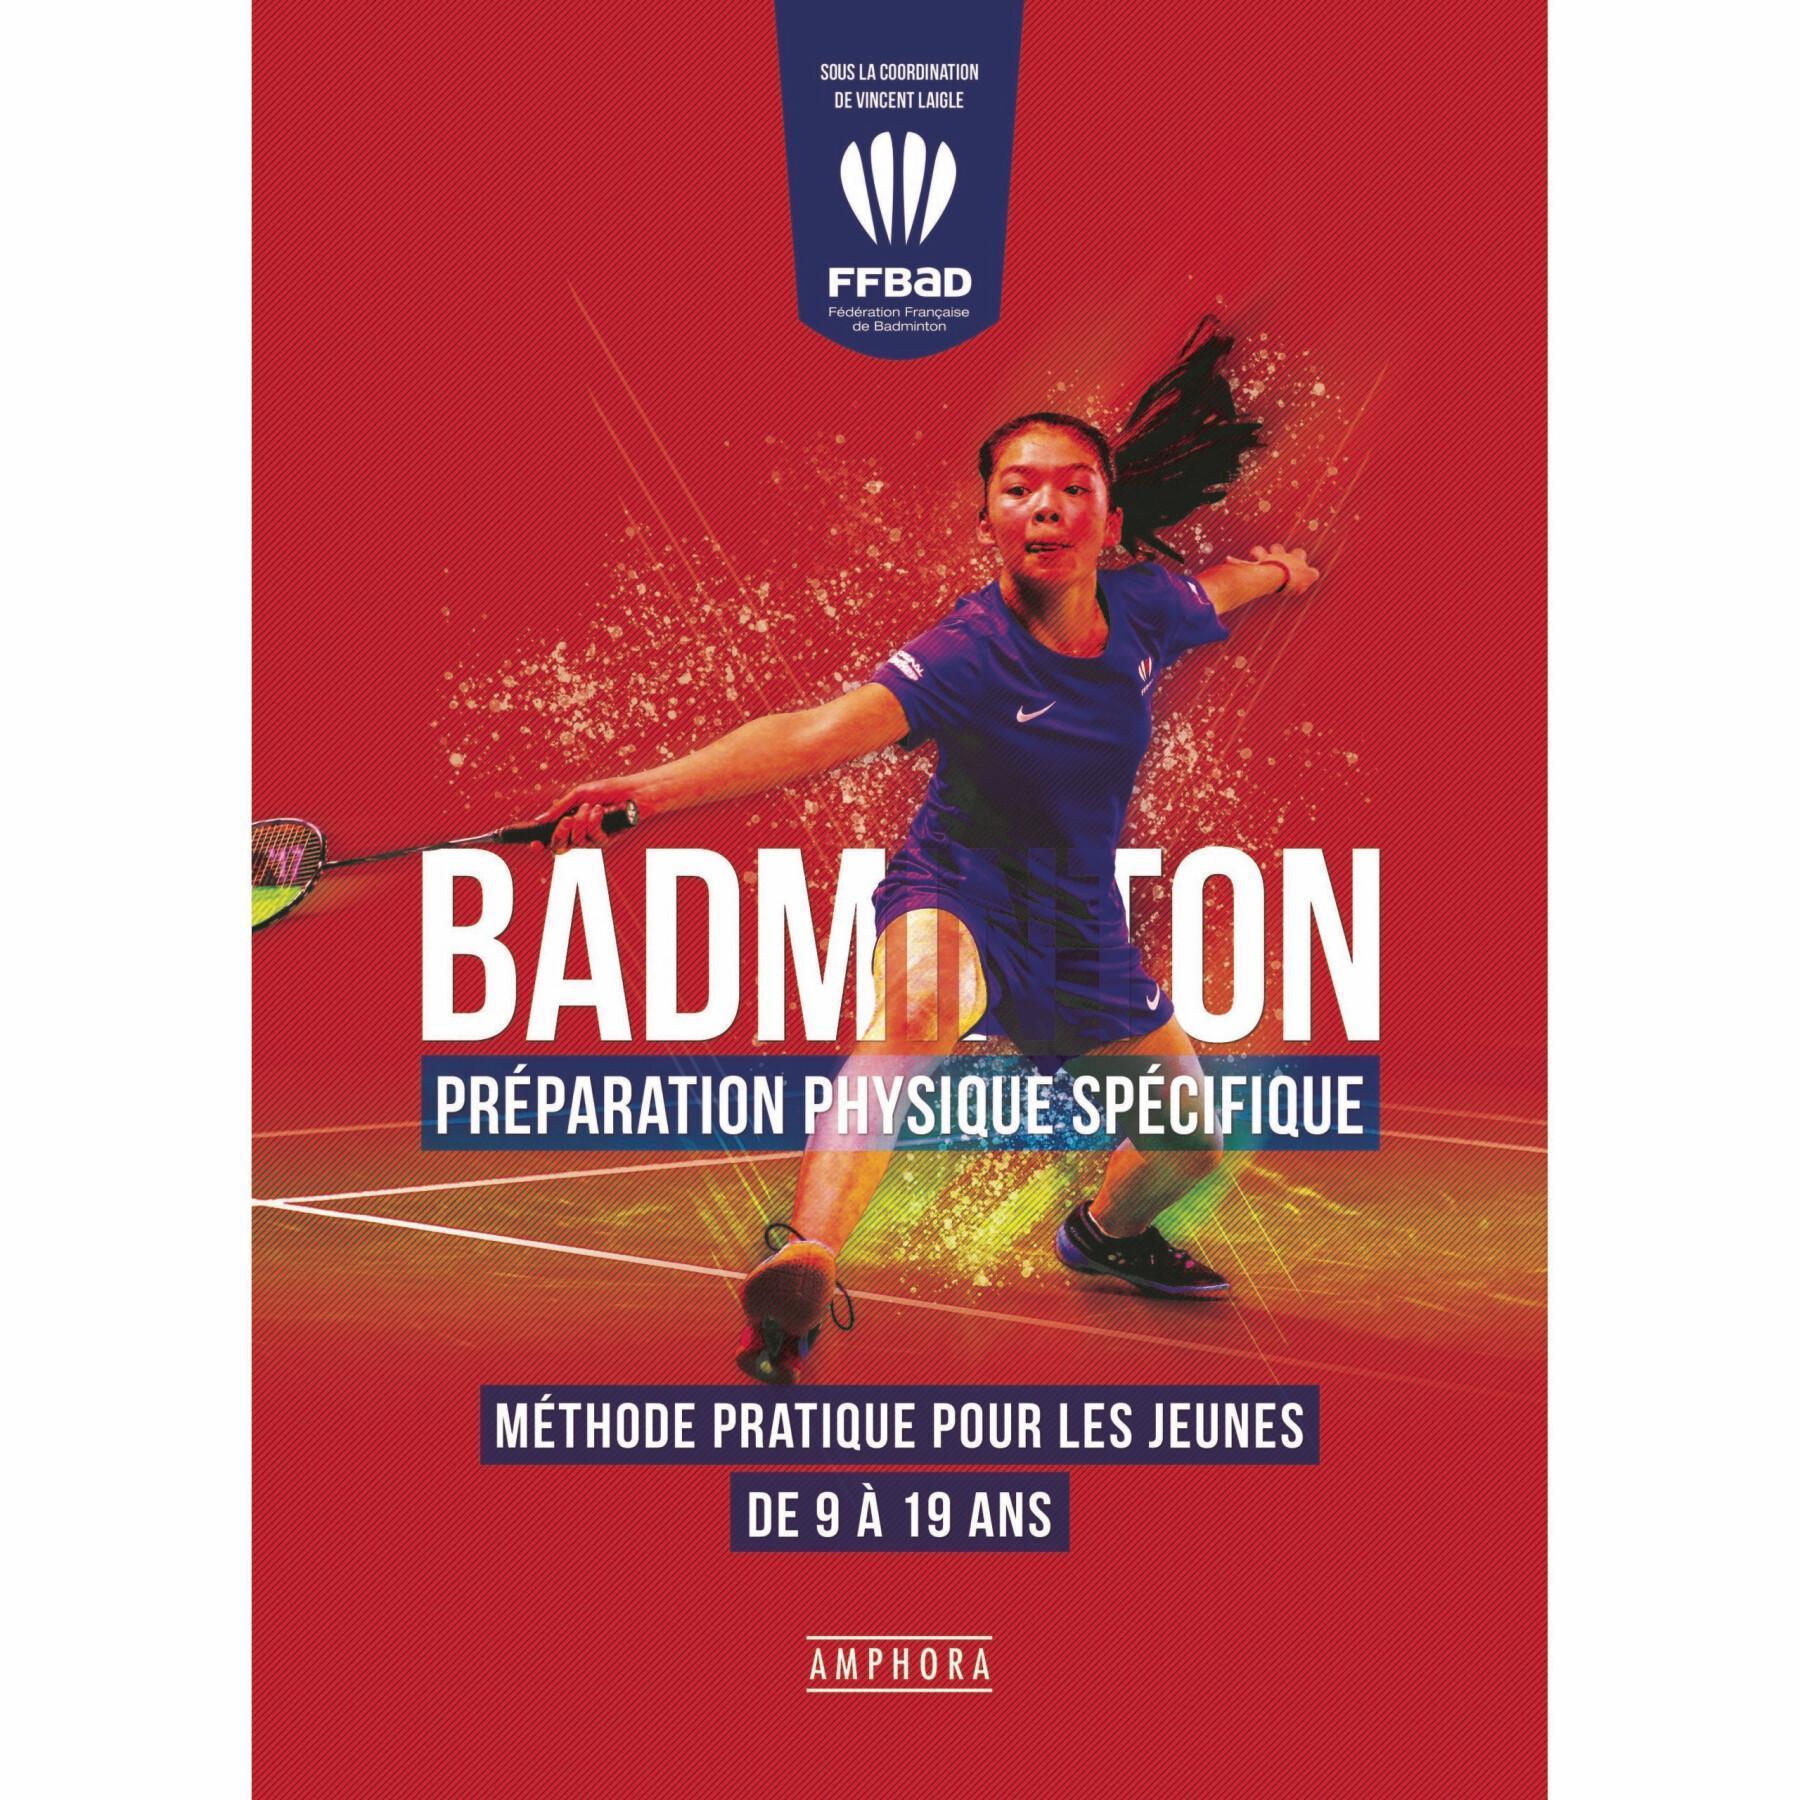 Książka o przygotowaniu fizycznym w badmintonie (publikacja maj 2020) Amphora